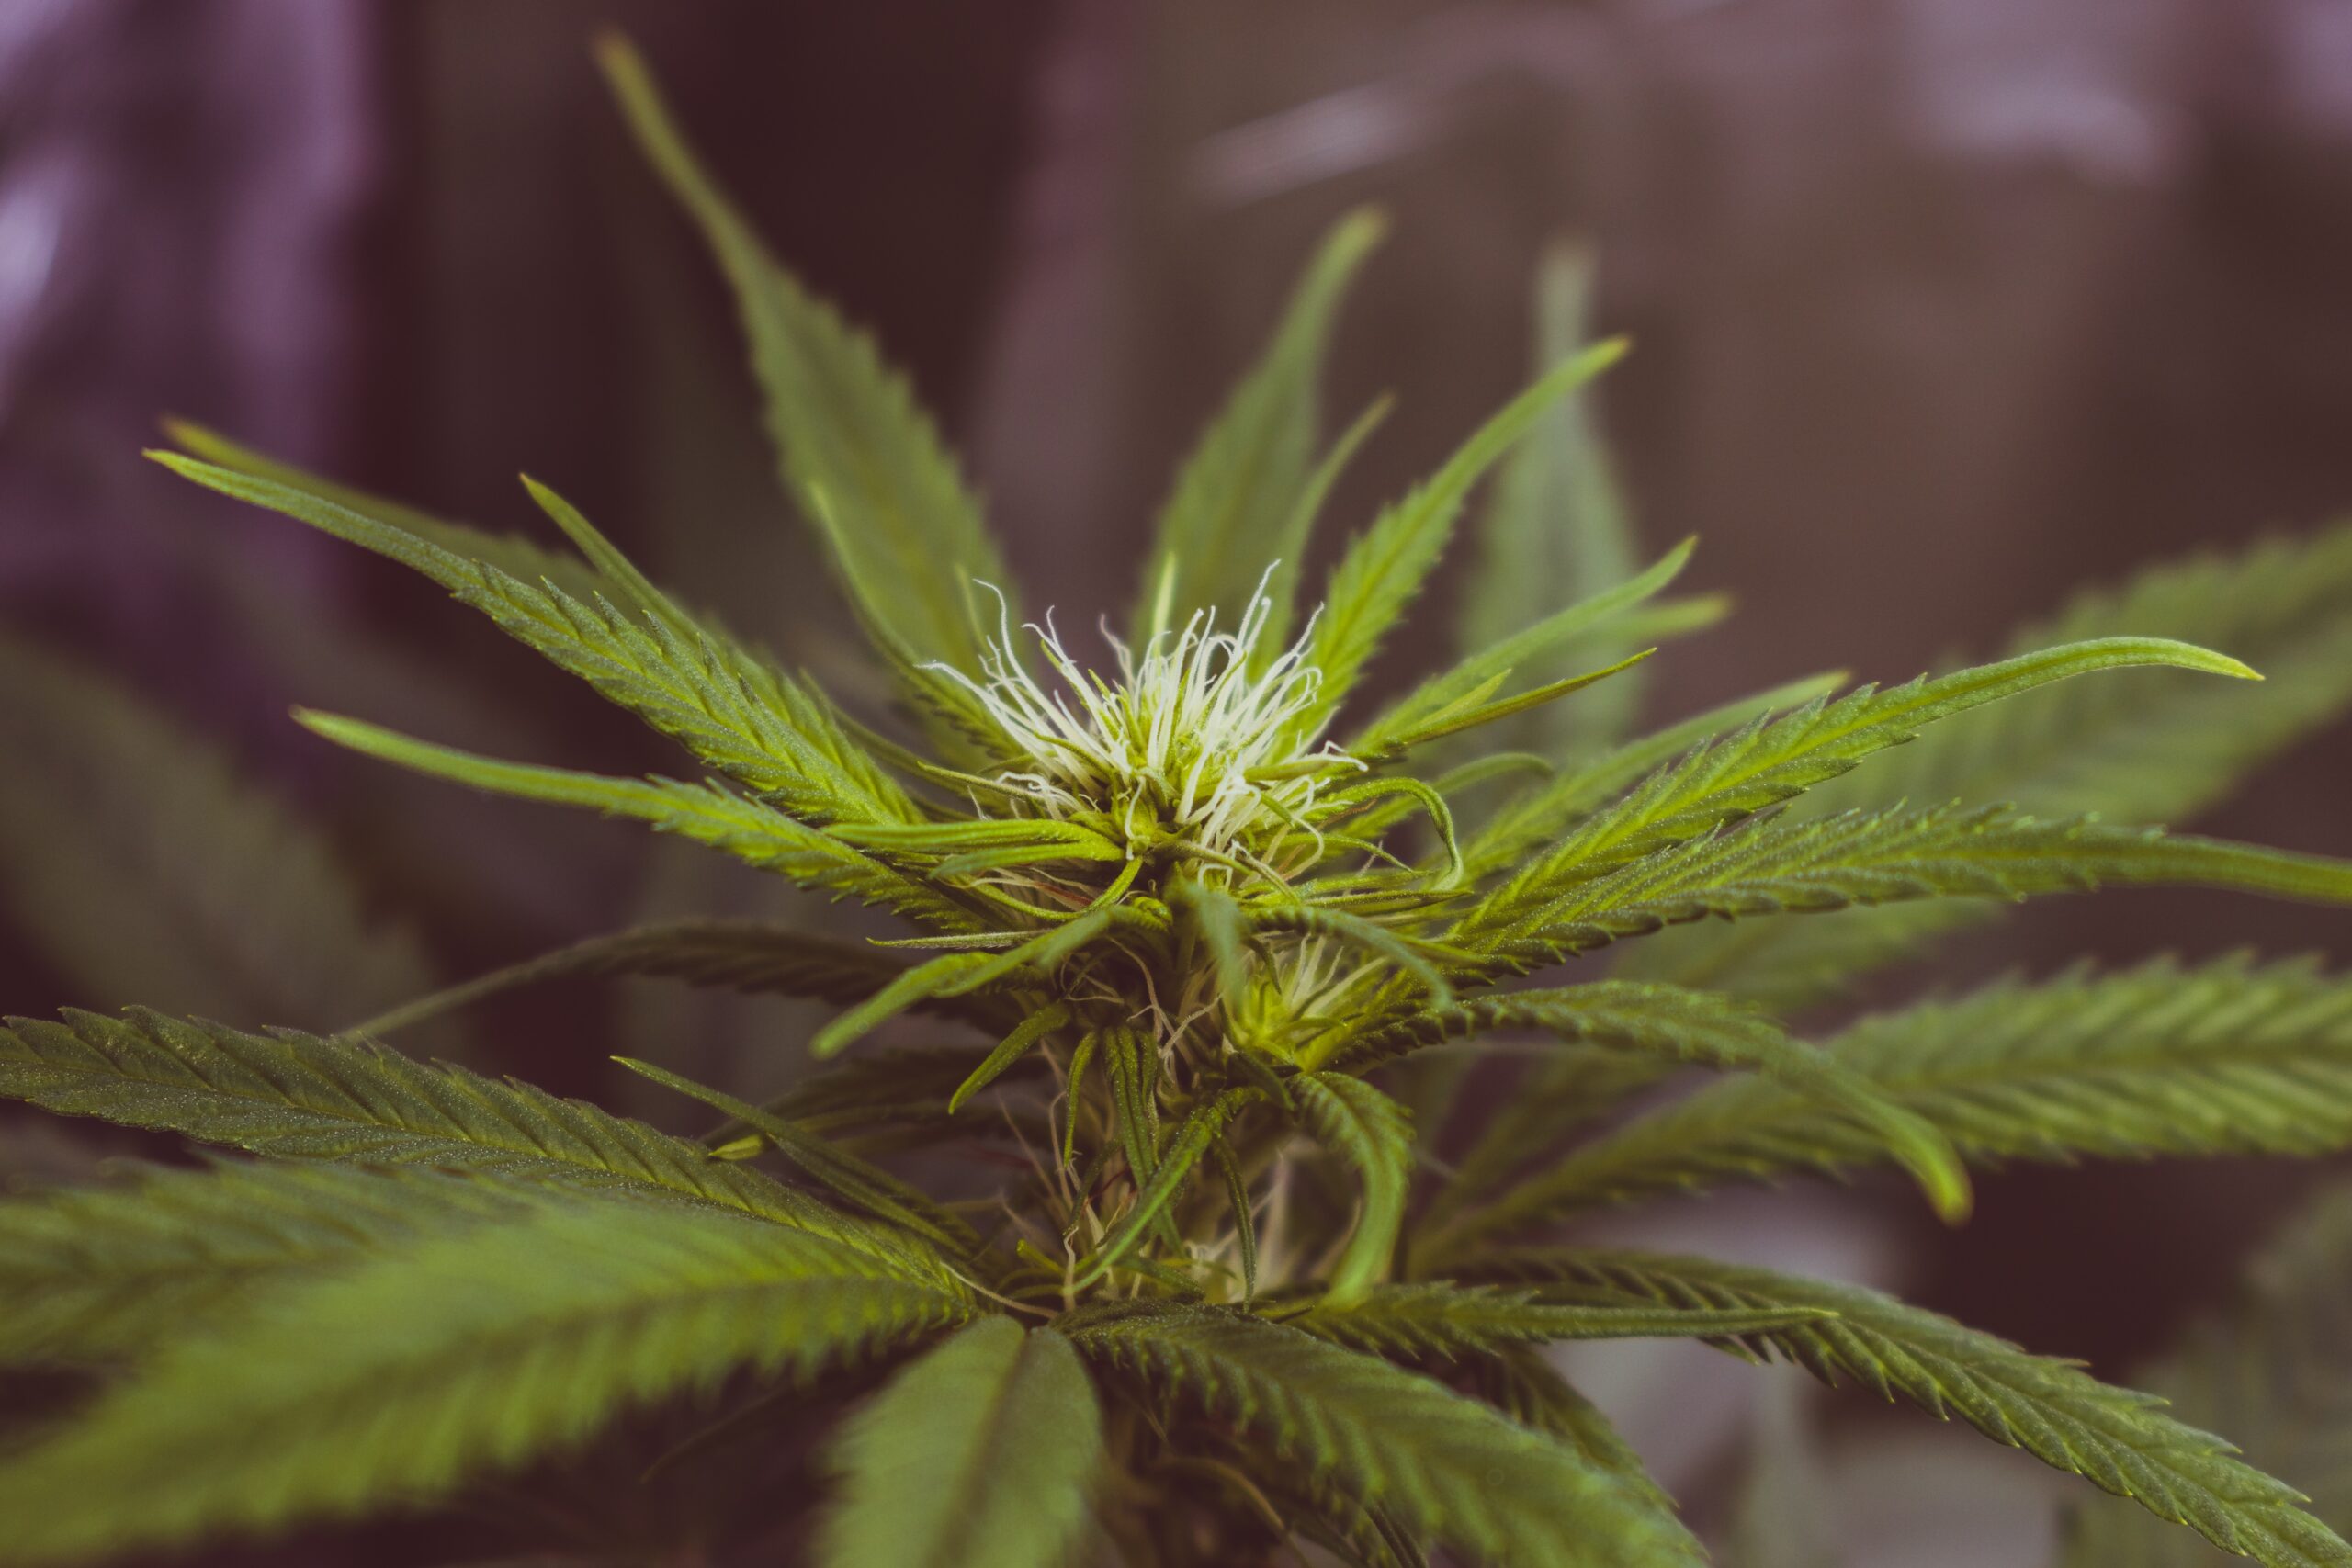 Cannabispflanze in einer Nahaufnahme